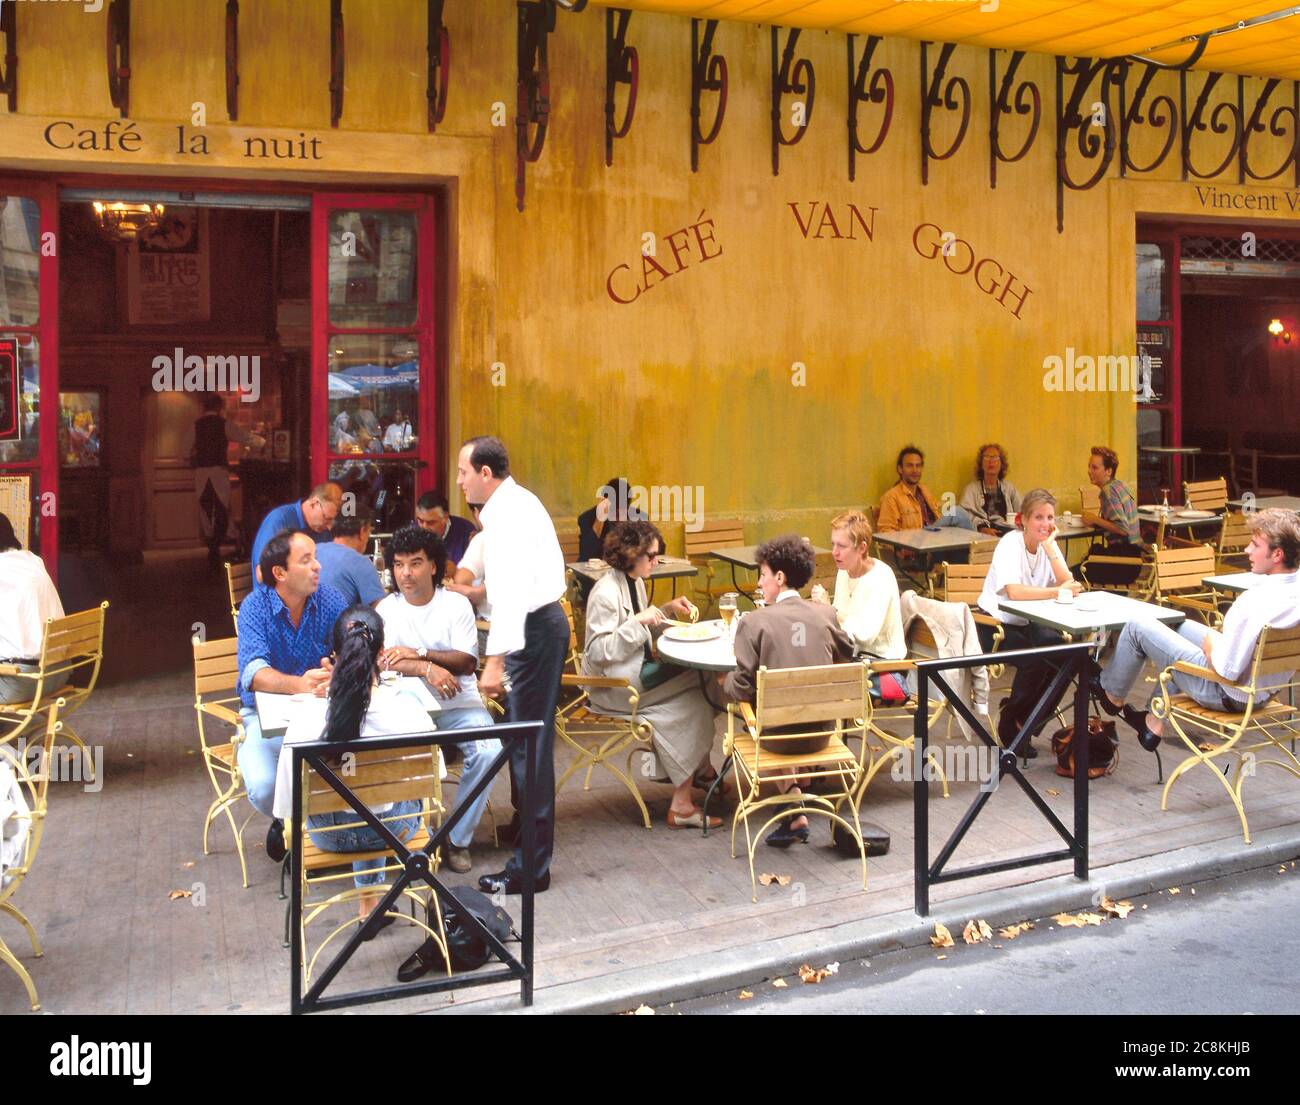 Arles, France - 25 juillet 2017 : café Van Gogh à la place du Forum à Arles. Provence, France. C'est la même terrasse de café que Vincent van Gogh a peinte Banque D'Images